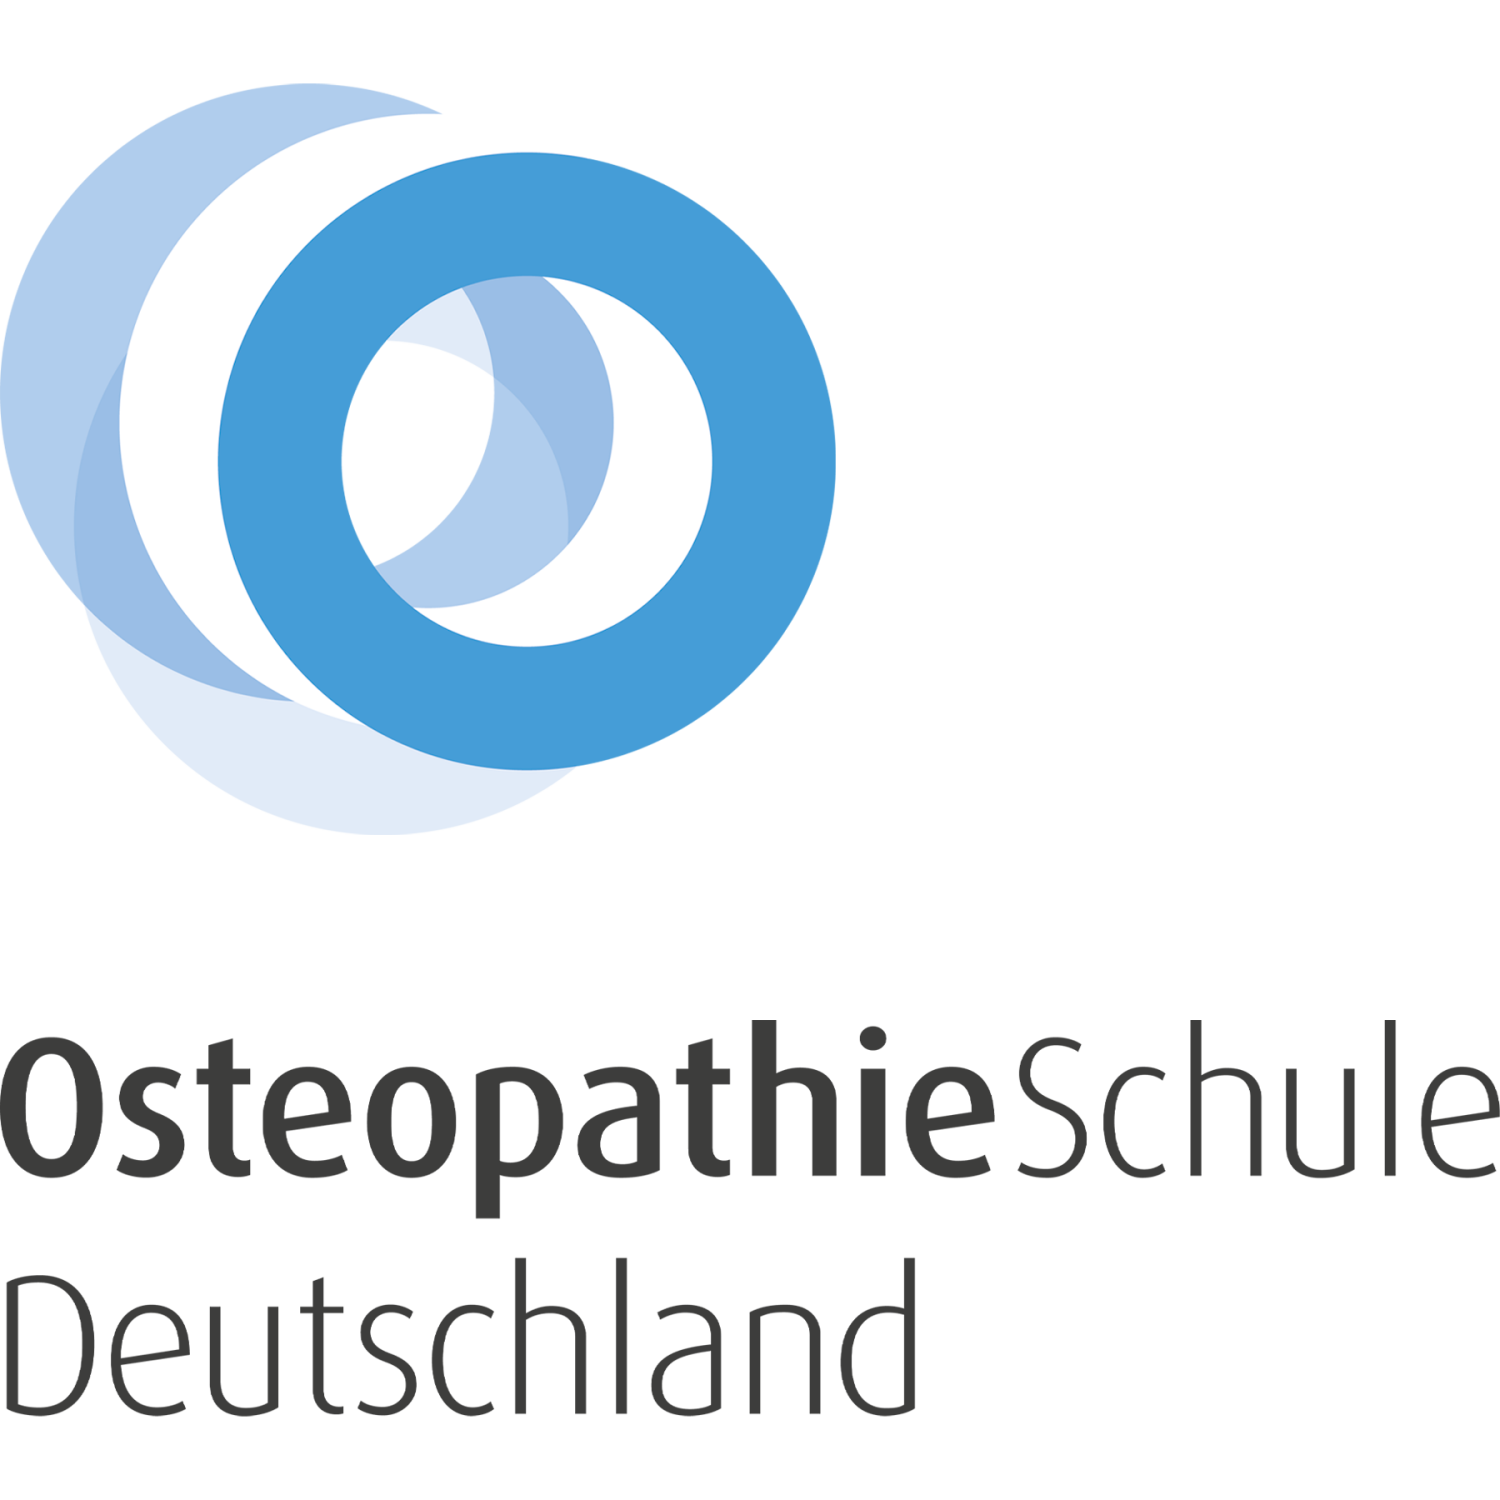 Osteopathie Schule
Deutschland GmbH